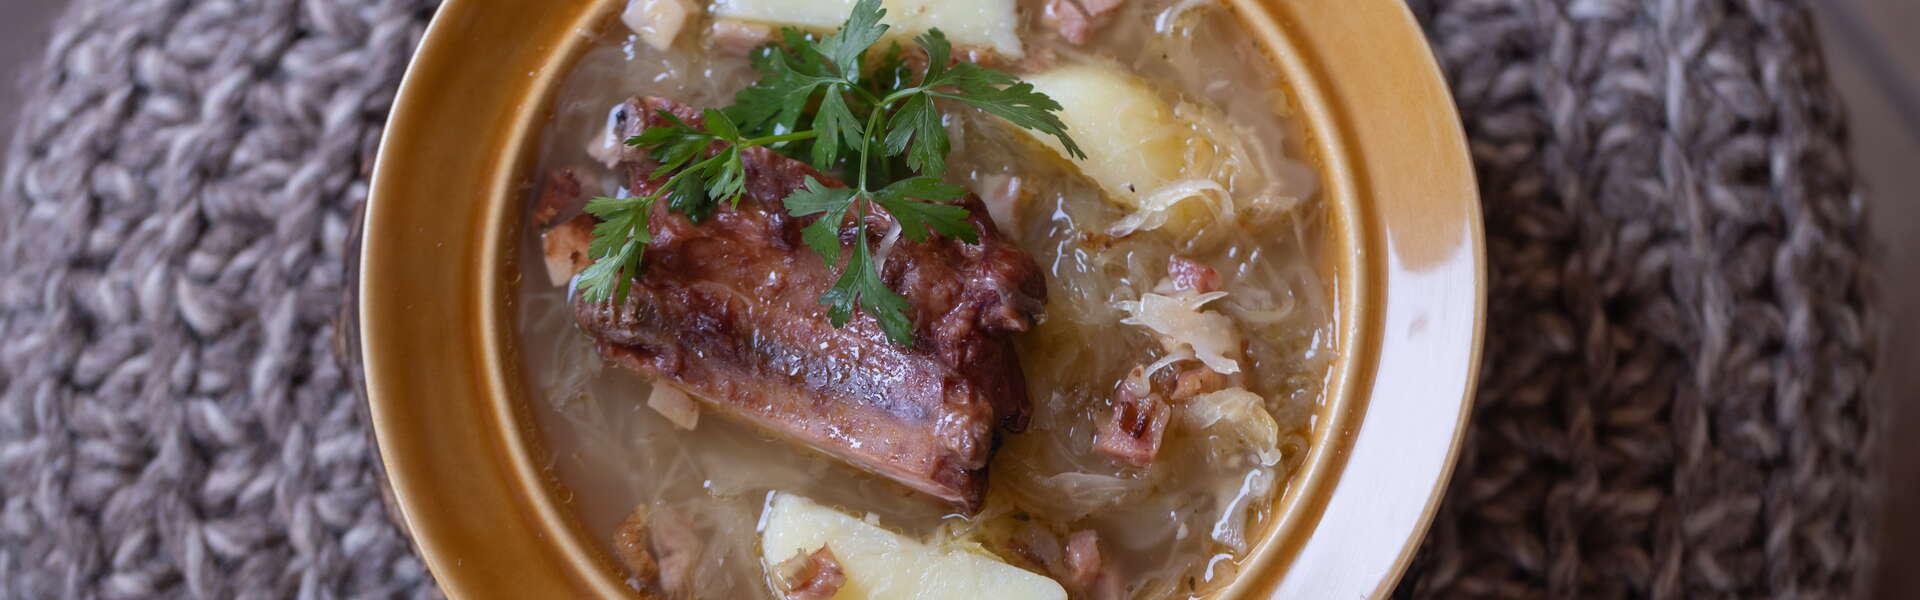 Talerz z zupą z kapusty kiszonej - kwaśnicą, z kawałkiem żeberka, ziemniakami i skwarkami, widziany z góry.